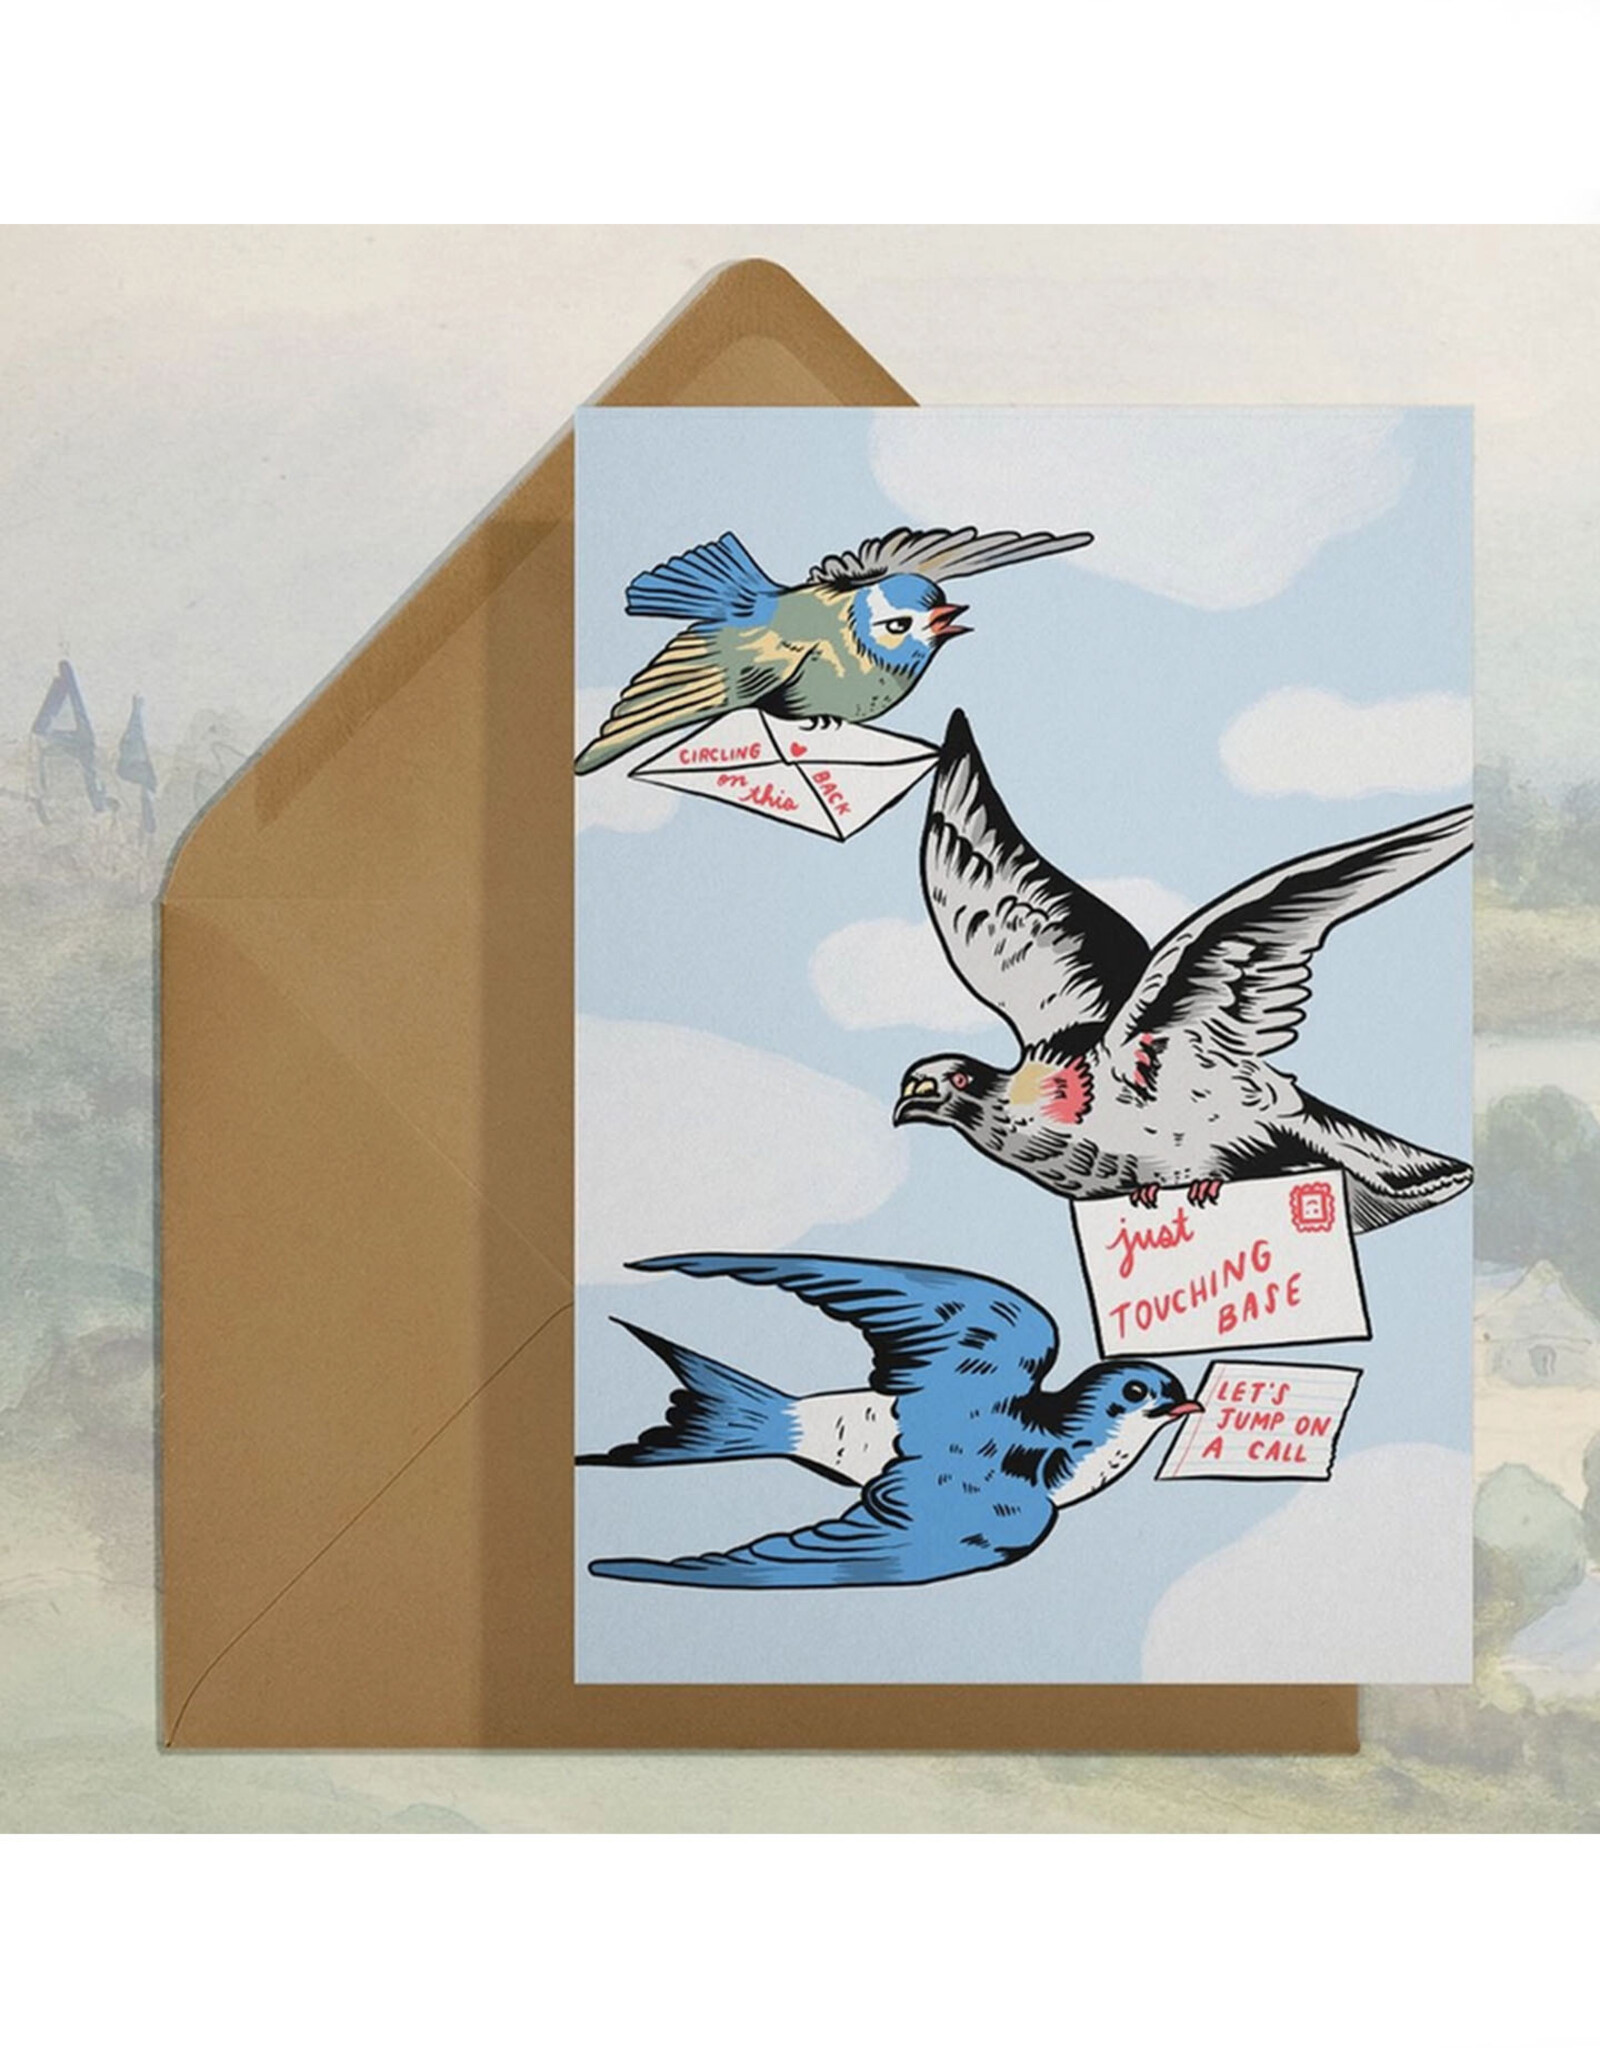 Touching Base Birds Greeting Card